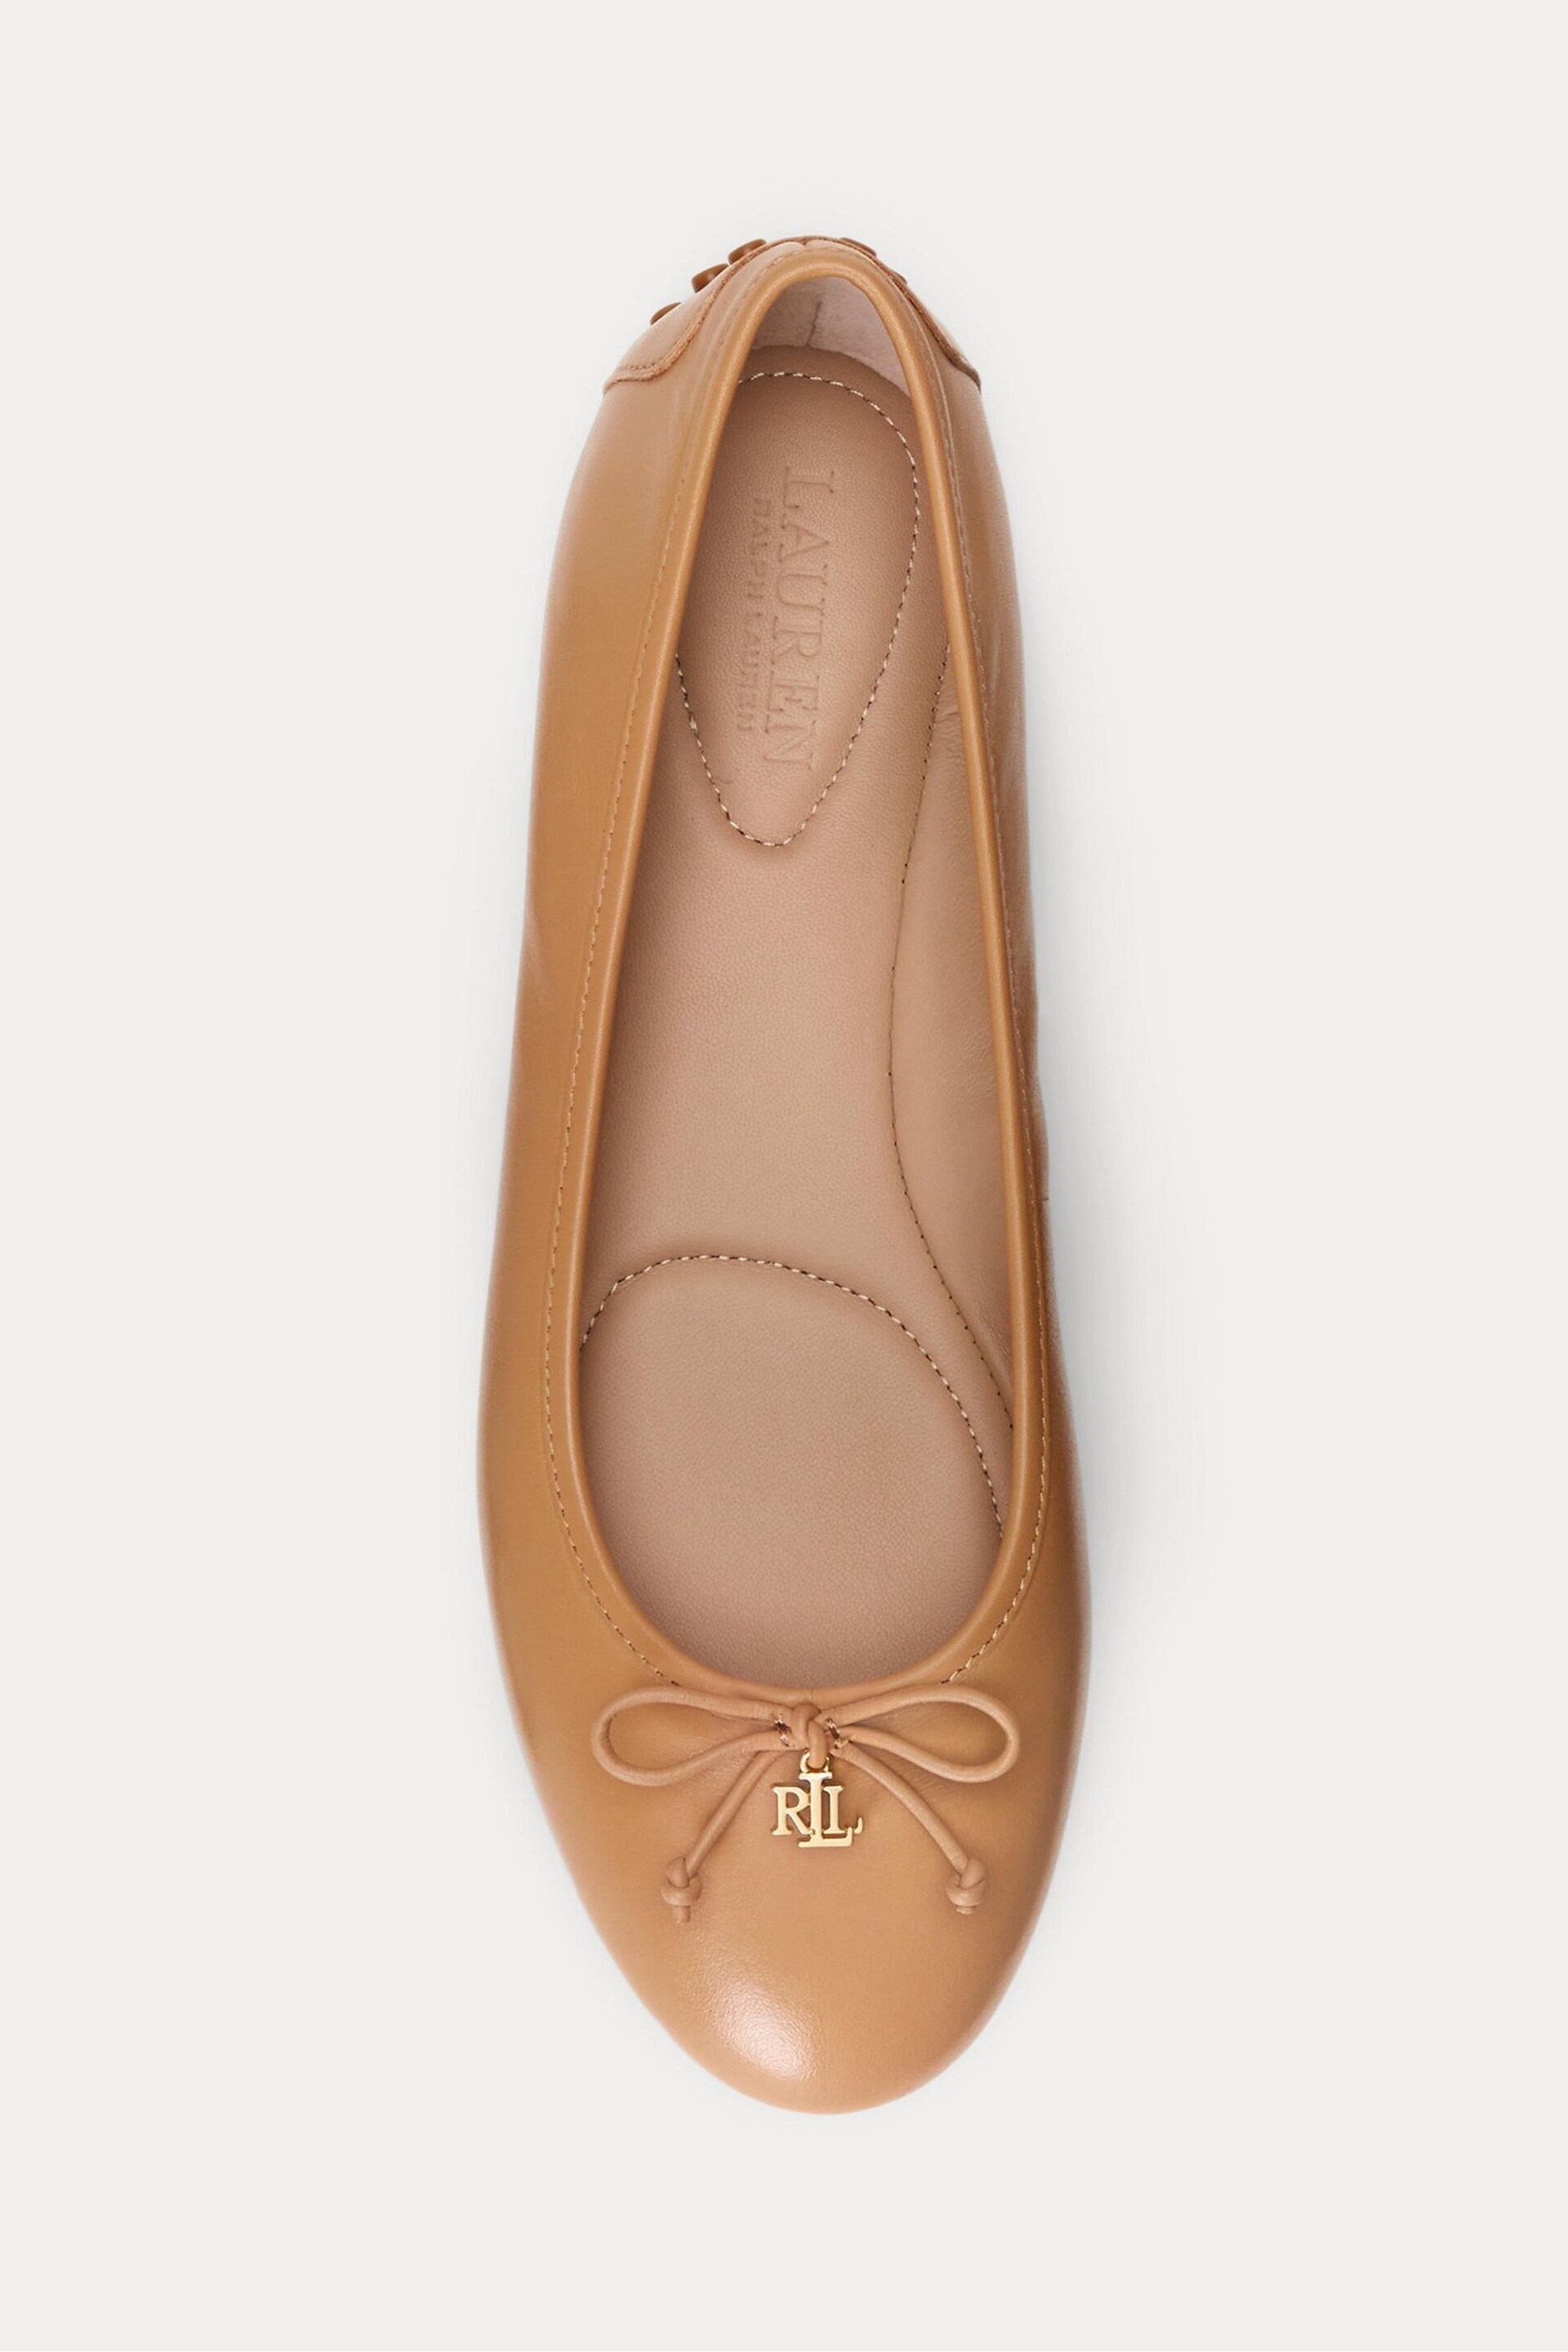 Lauren Ralph Lauren Jayna Nappa Leather Ballet Flat Shoes - Image 4 of 4